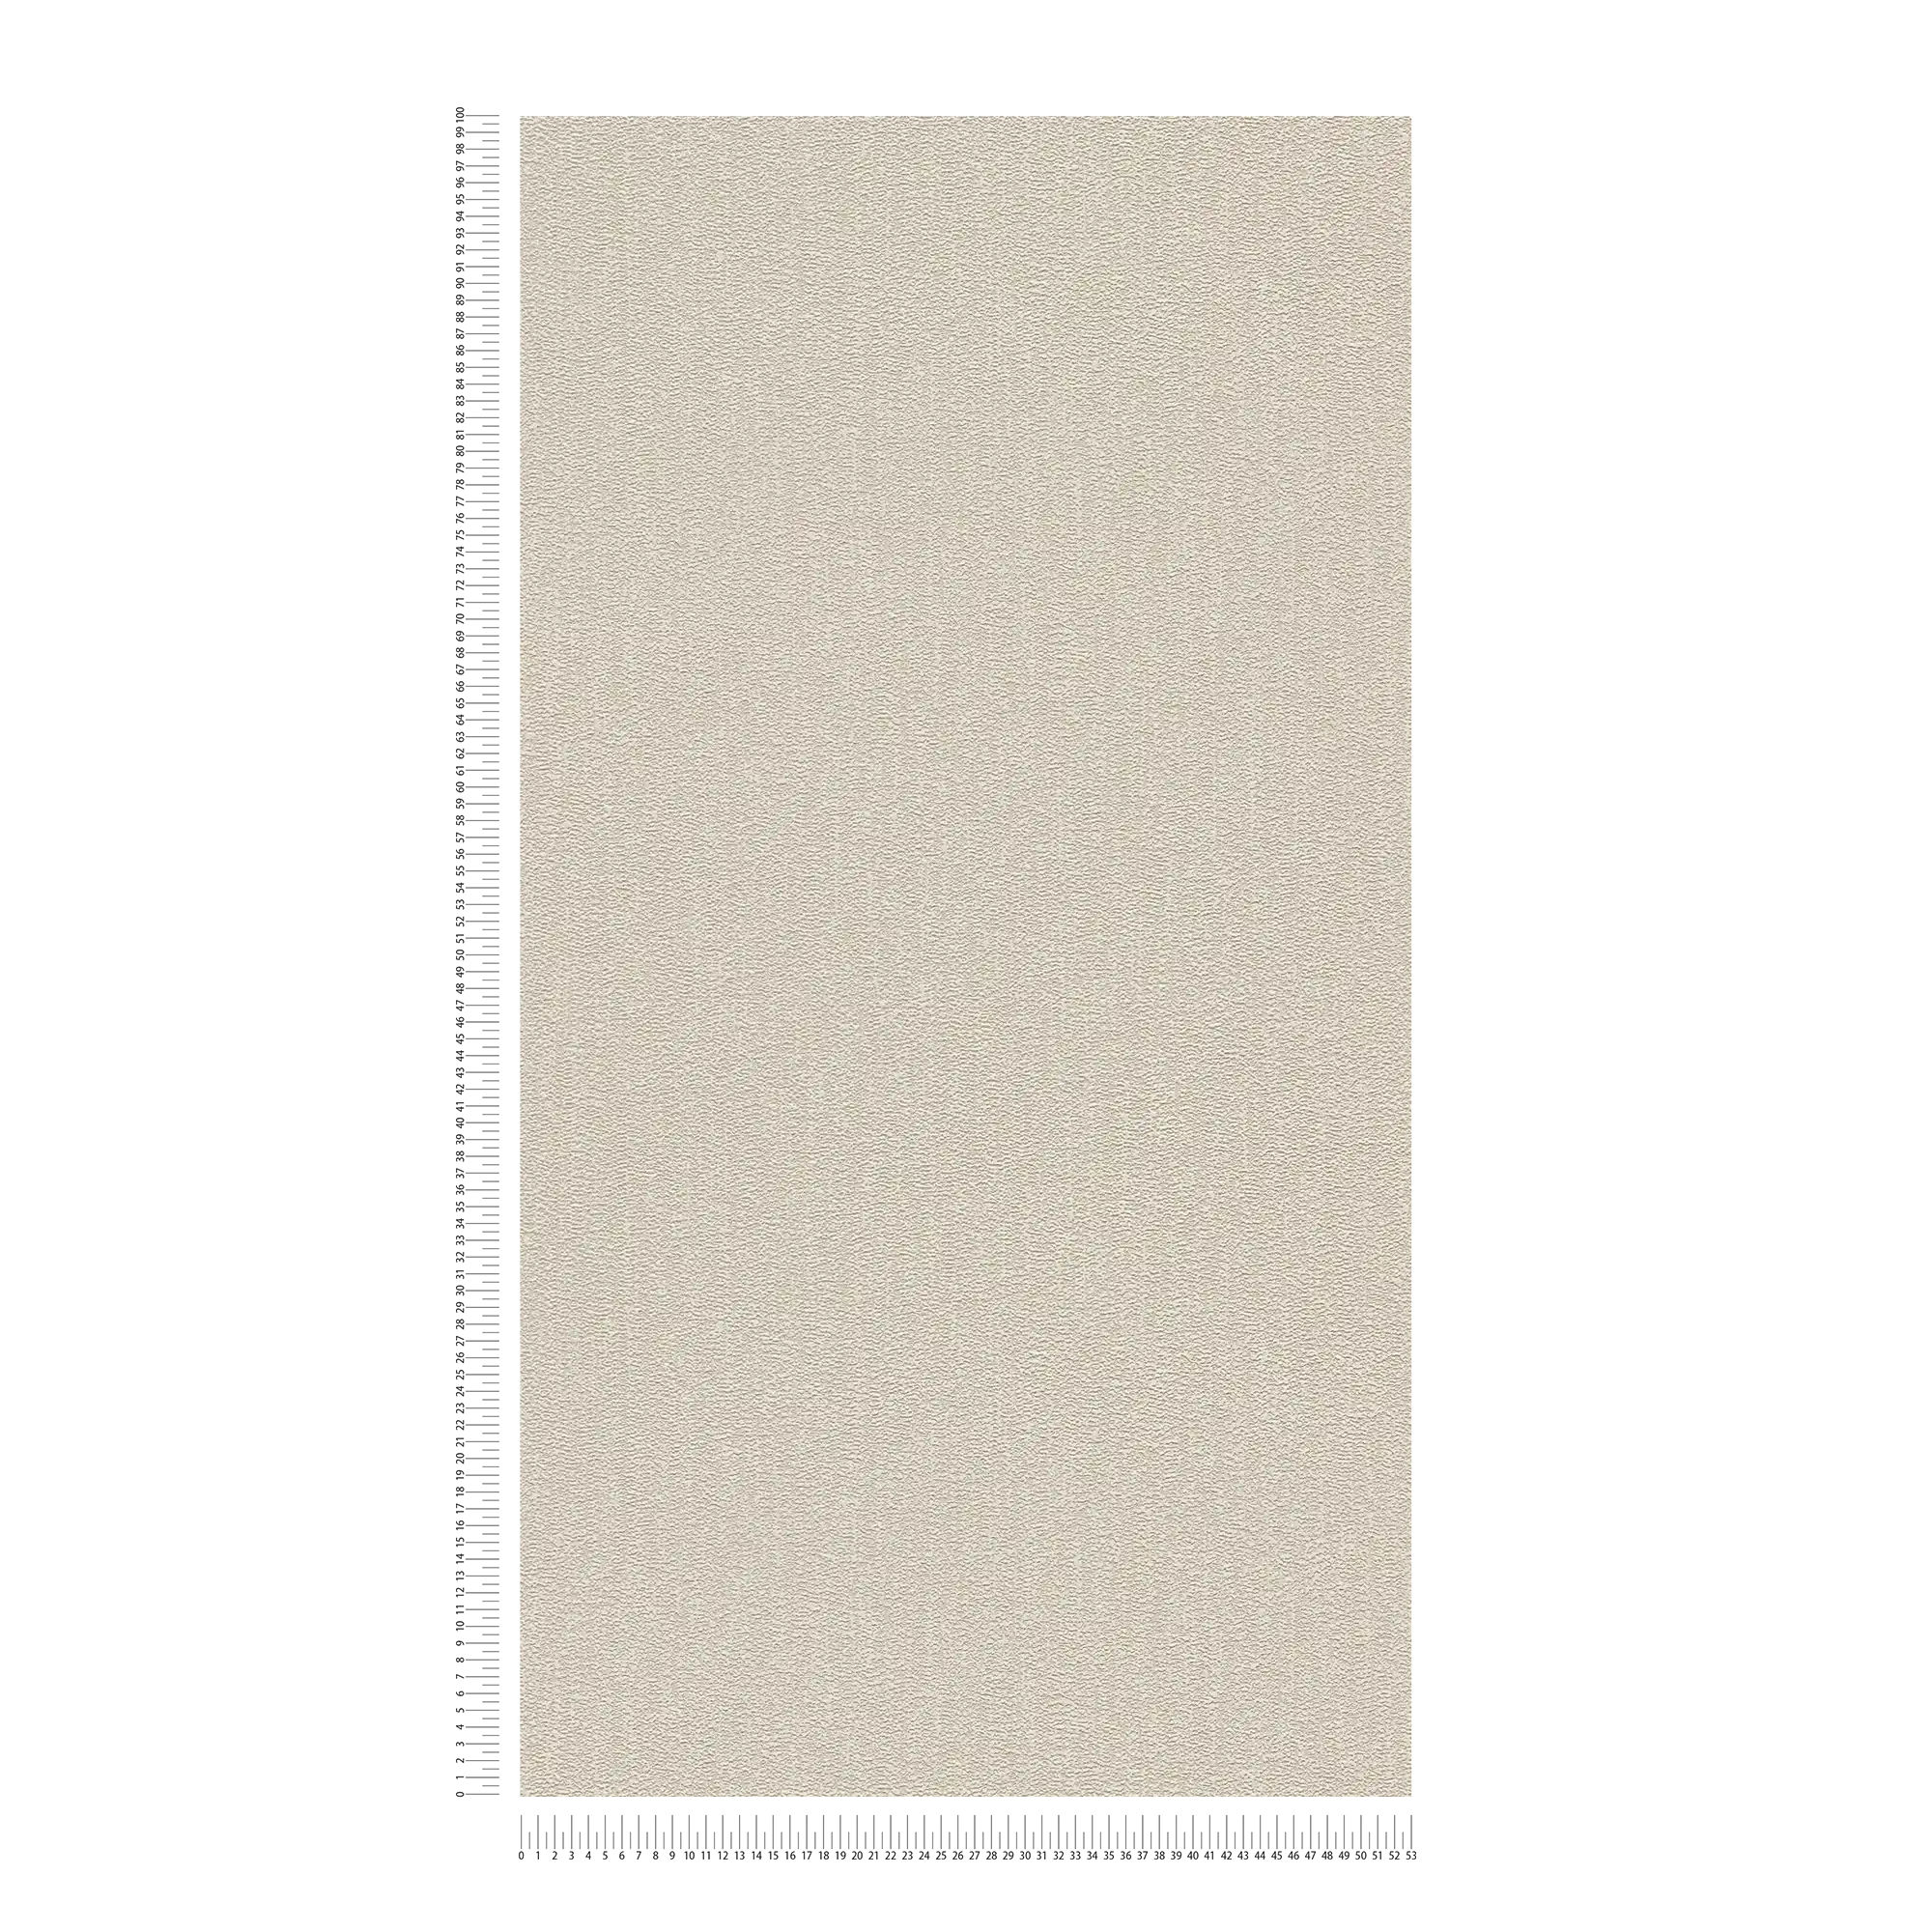             Papier peint uni texturé légèrement brillant - beige, gris, argenté
        